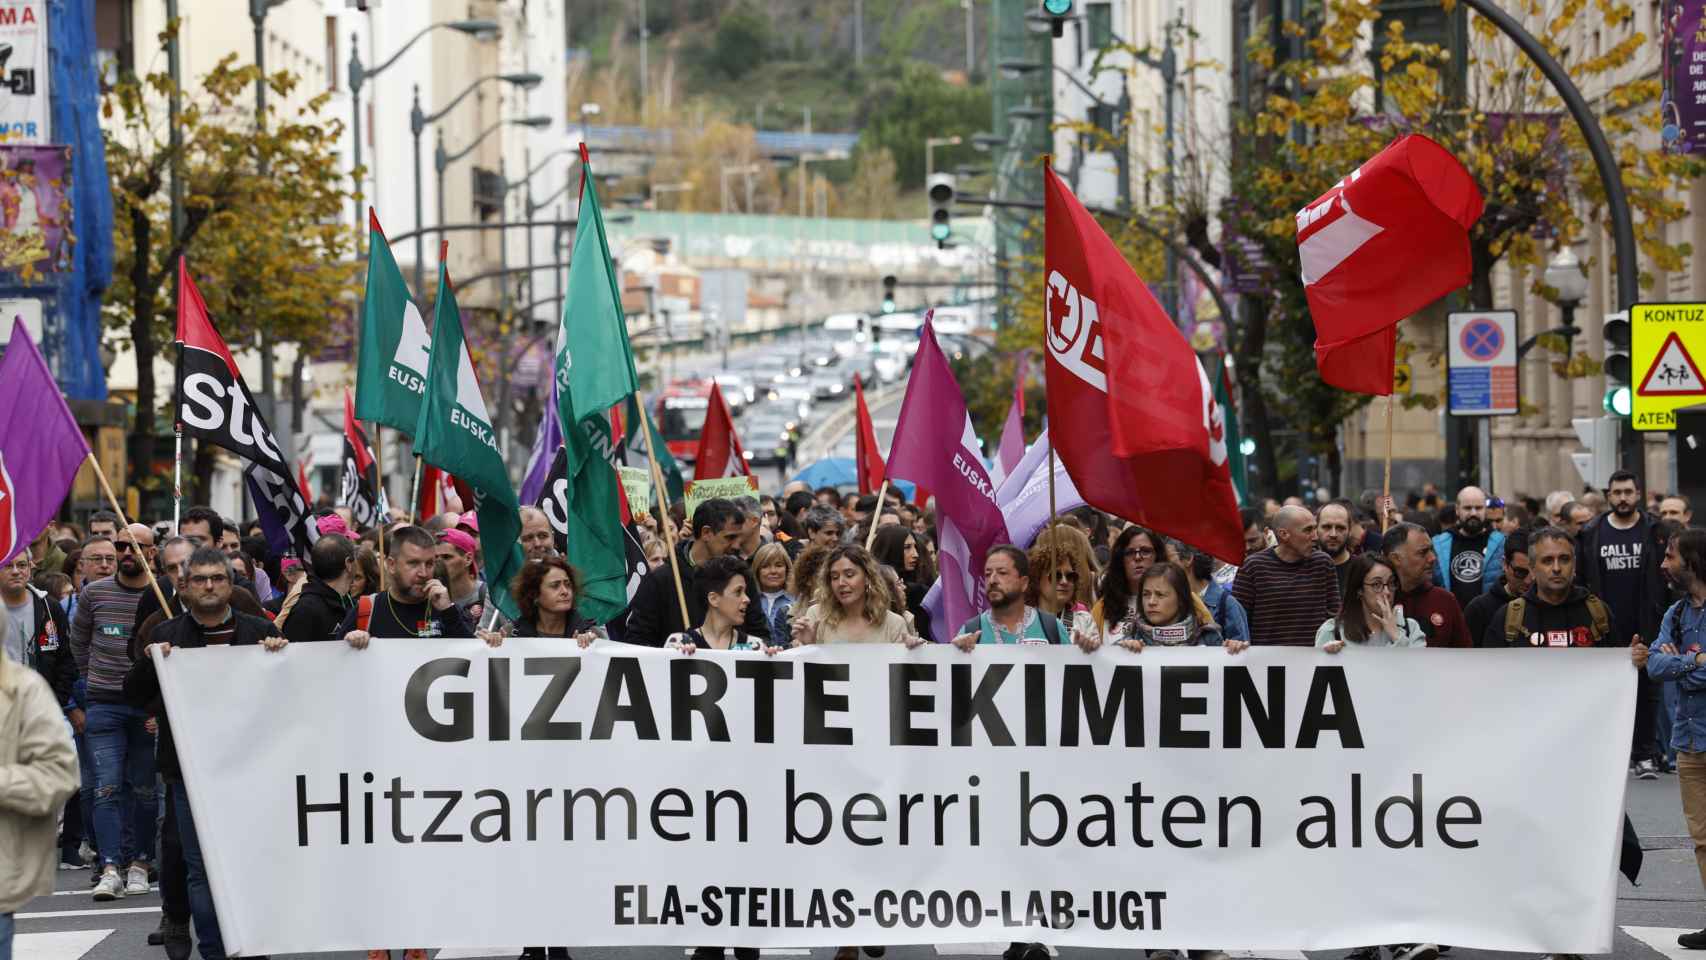 Manifestación en Bilbao de trabajadores de la enseñanza concertada / MIGUEL TOÑI - EFE